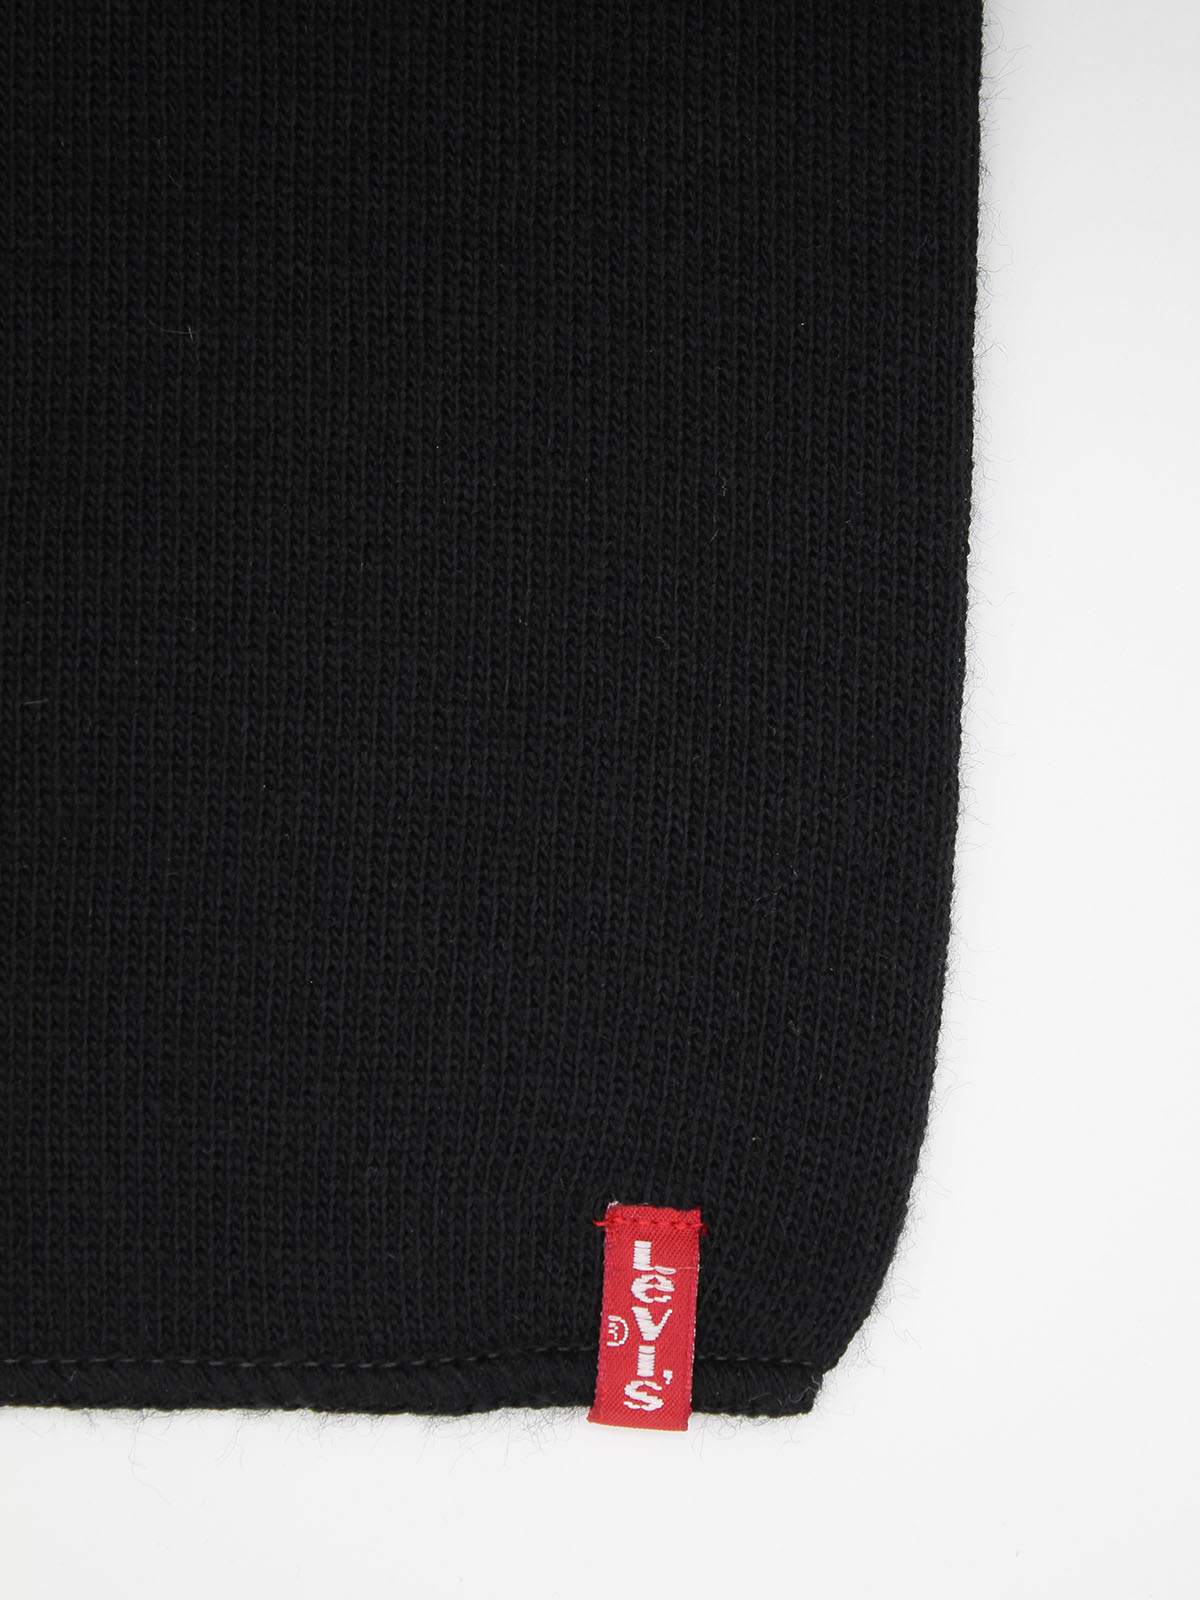 Bufanda d'hivern unisex Levi's, model 14152/59, de color negre - 3 - La Casa Dels Pantalons